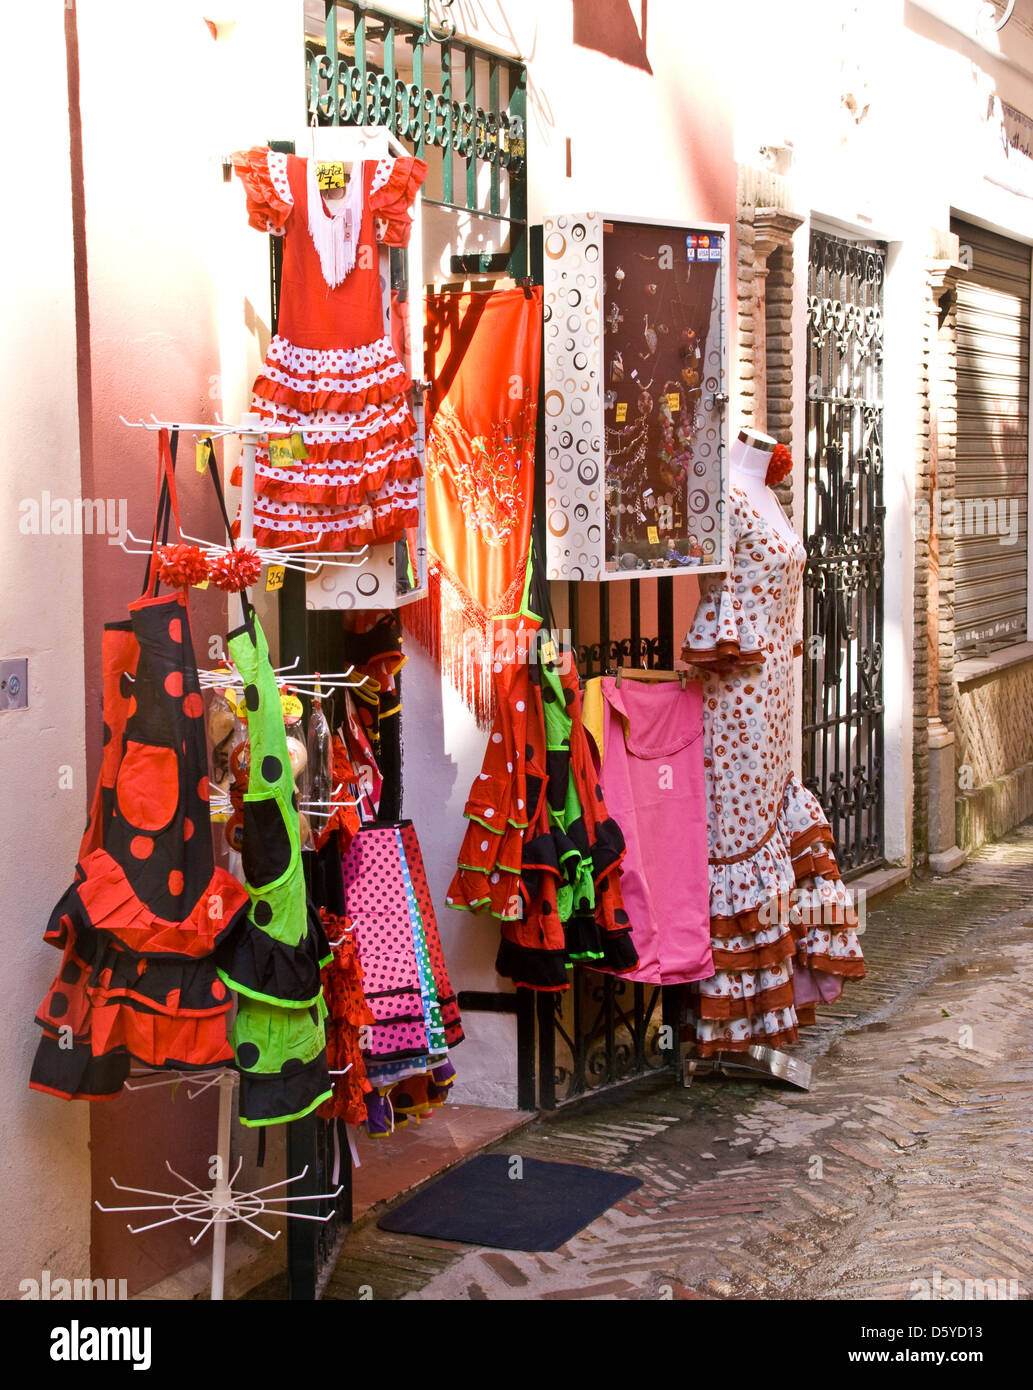 Robes de flamenco sur l'affichage dans une rue de Séville Andalousie Espagne Europe Banque D'Images